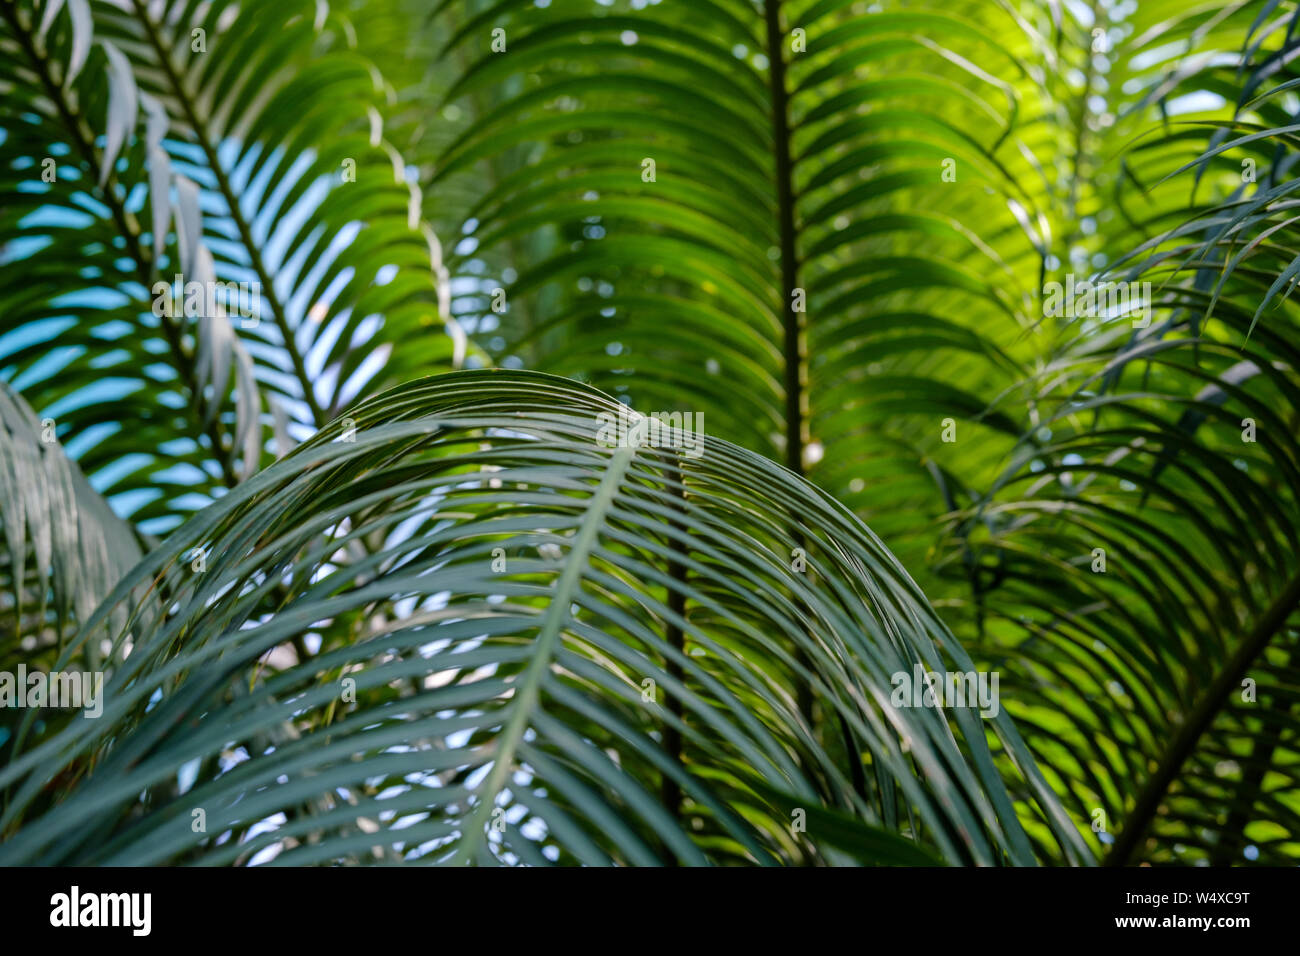 Les feuilles vertes de Cycas revoluta, la texture et l'arrière-plan Banque D'Images